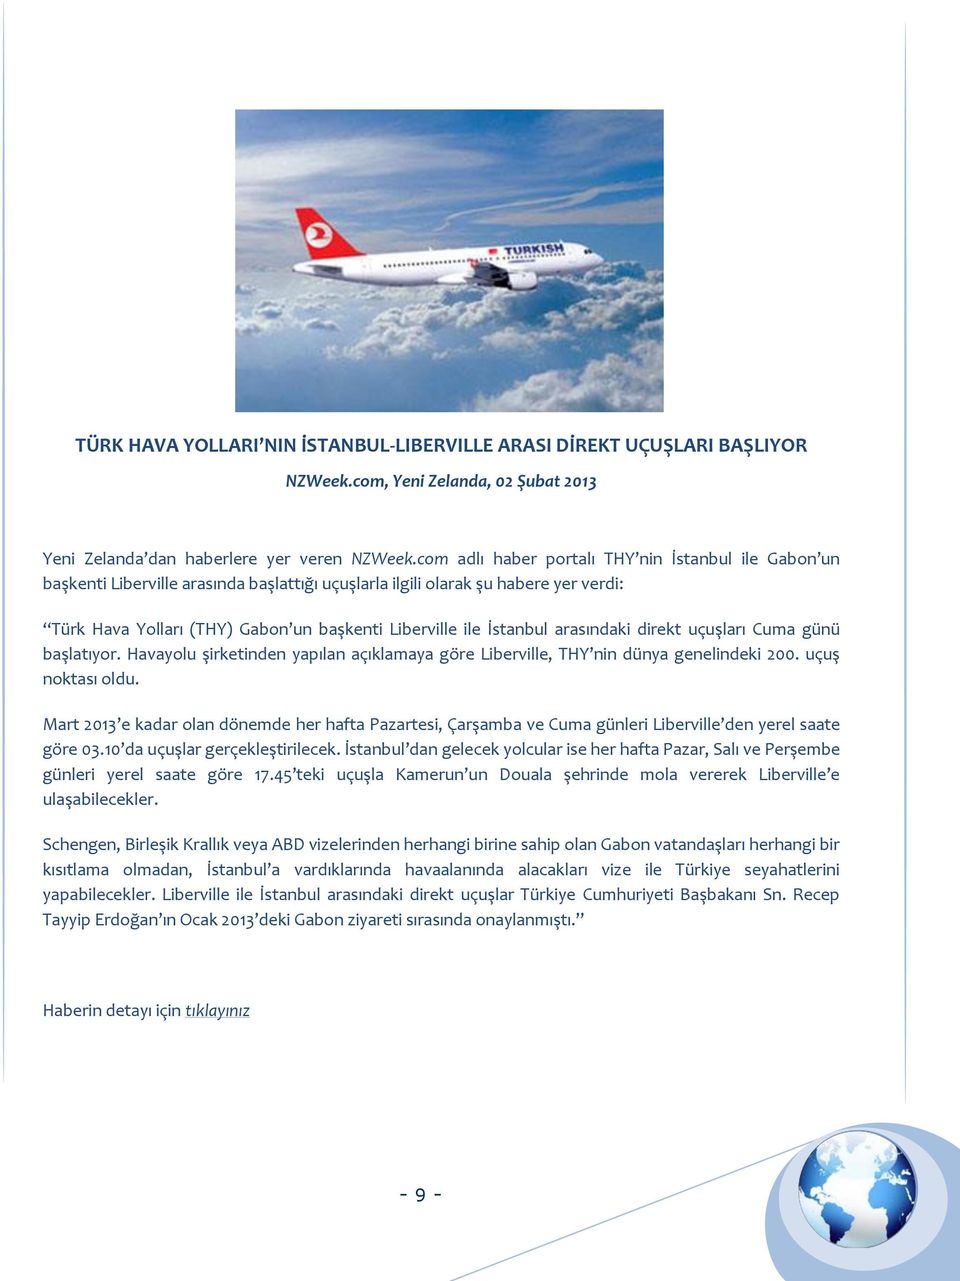 İstanbul arasındaki direkt uçuşları Cuma günü başlatıyor. Havayolu şirketinden yapılan açıklamaya göre Liberville, THY nin dünya genelindeki 200. uçuş noktası oldu.